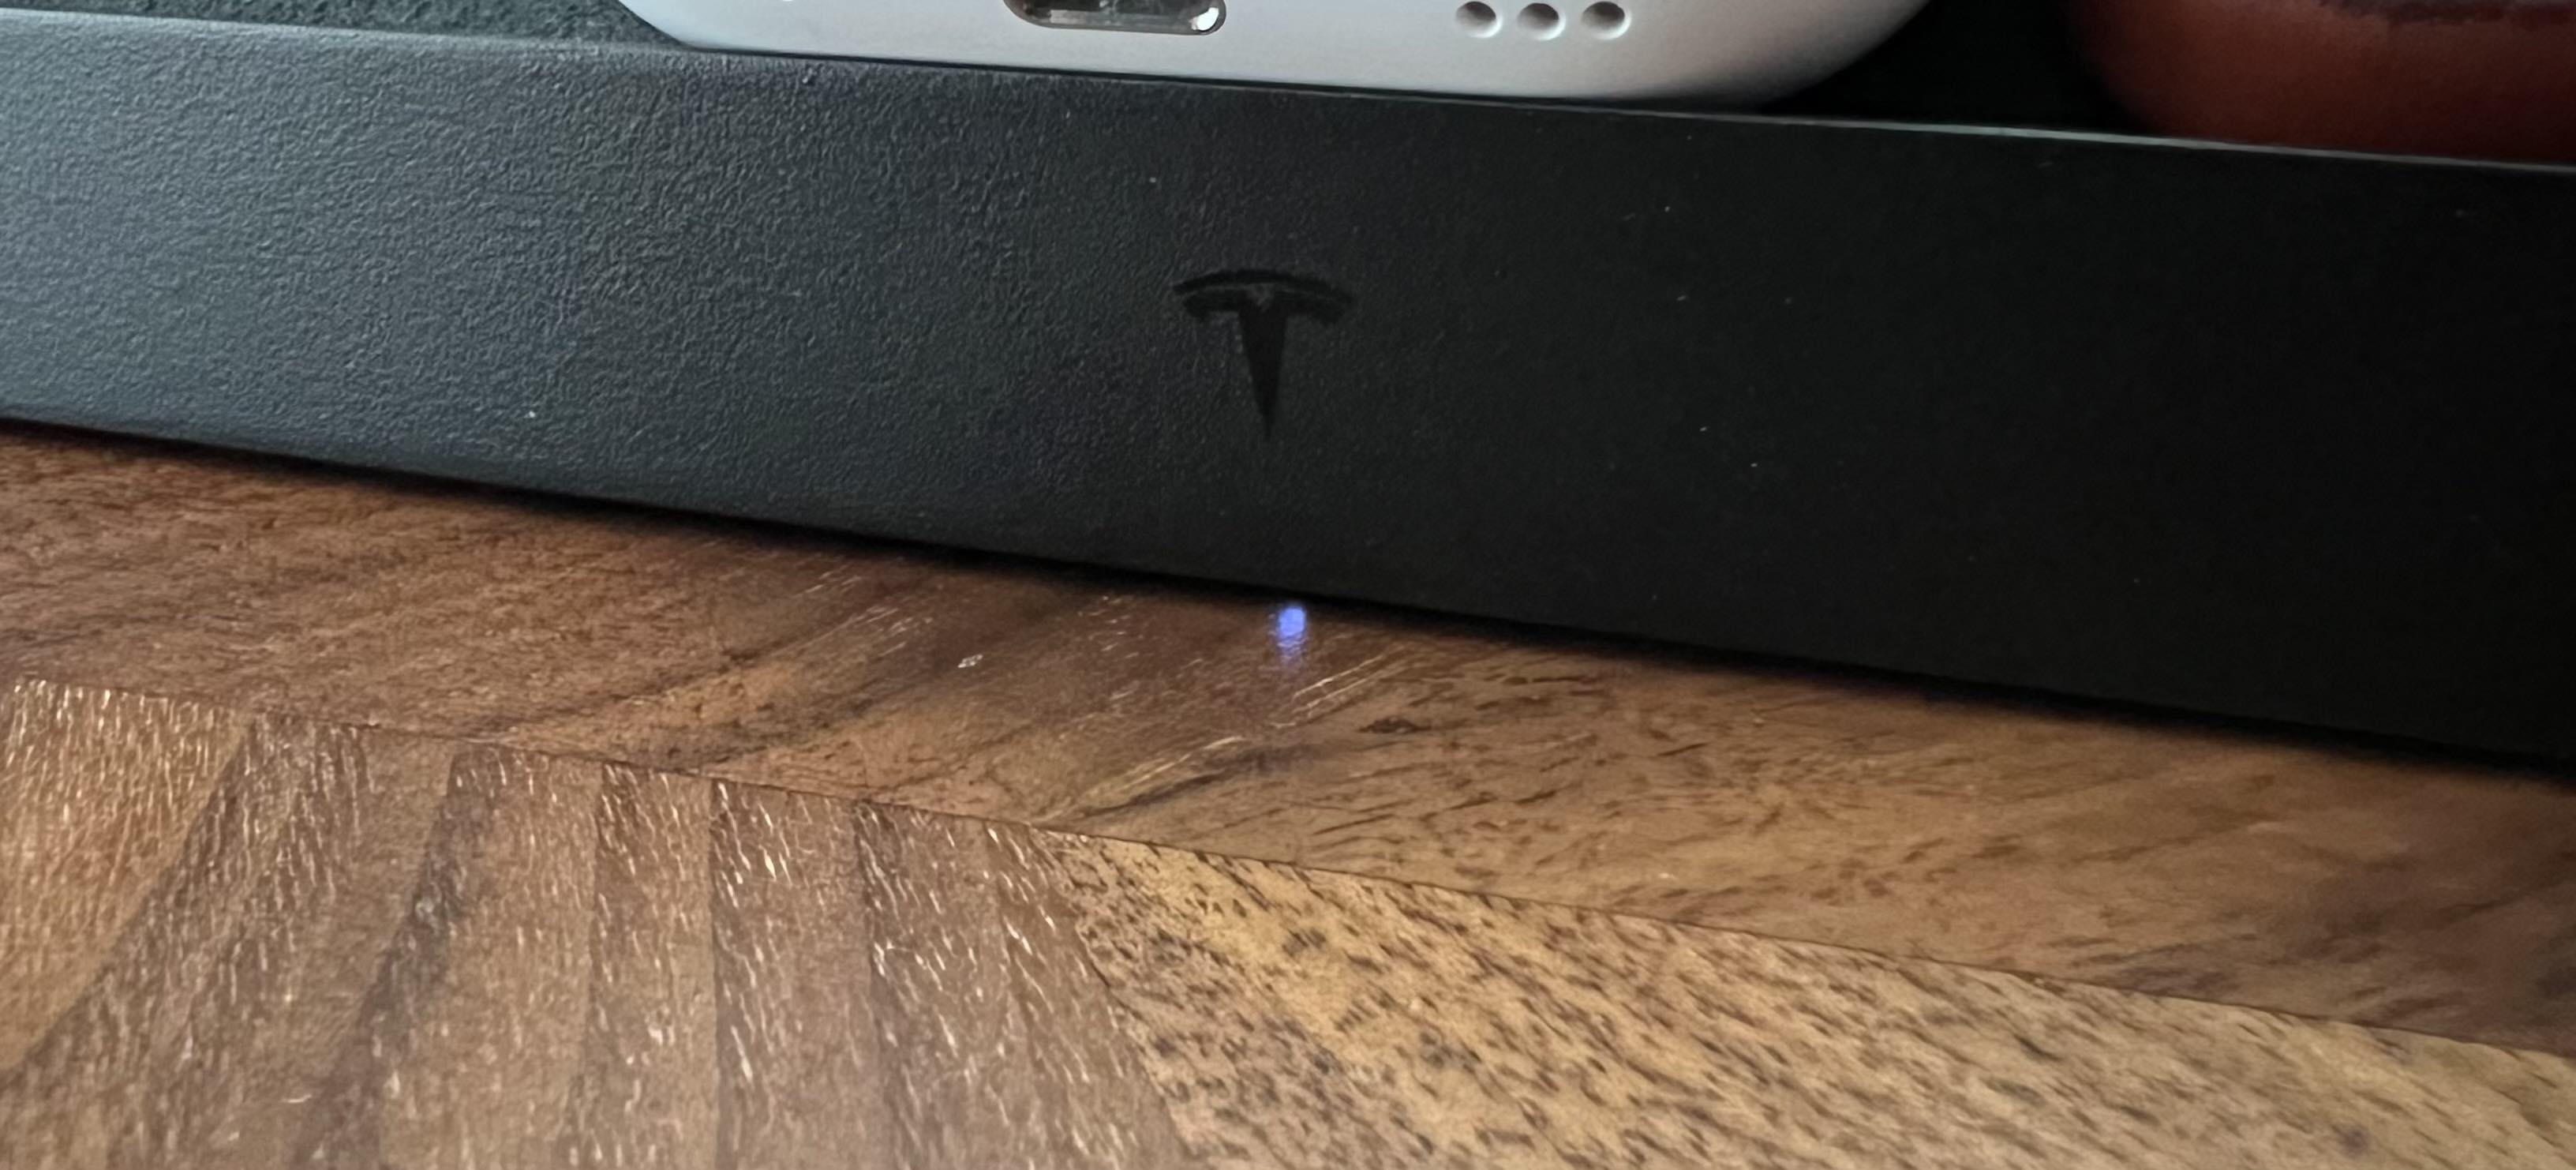 Indicateur LED de la plate-forme de charge sans fil Tesla